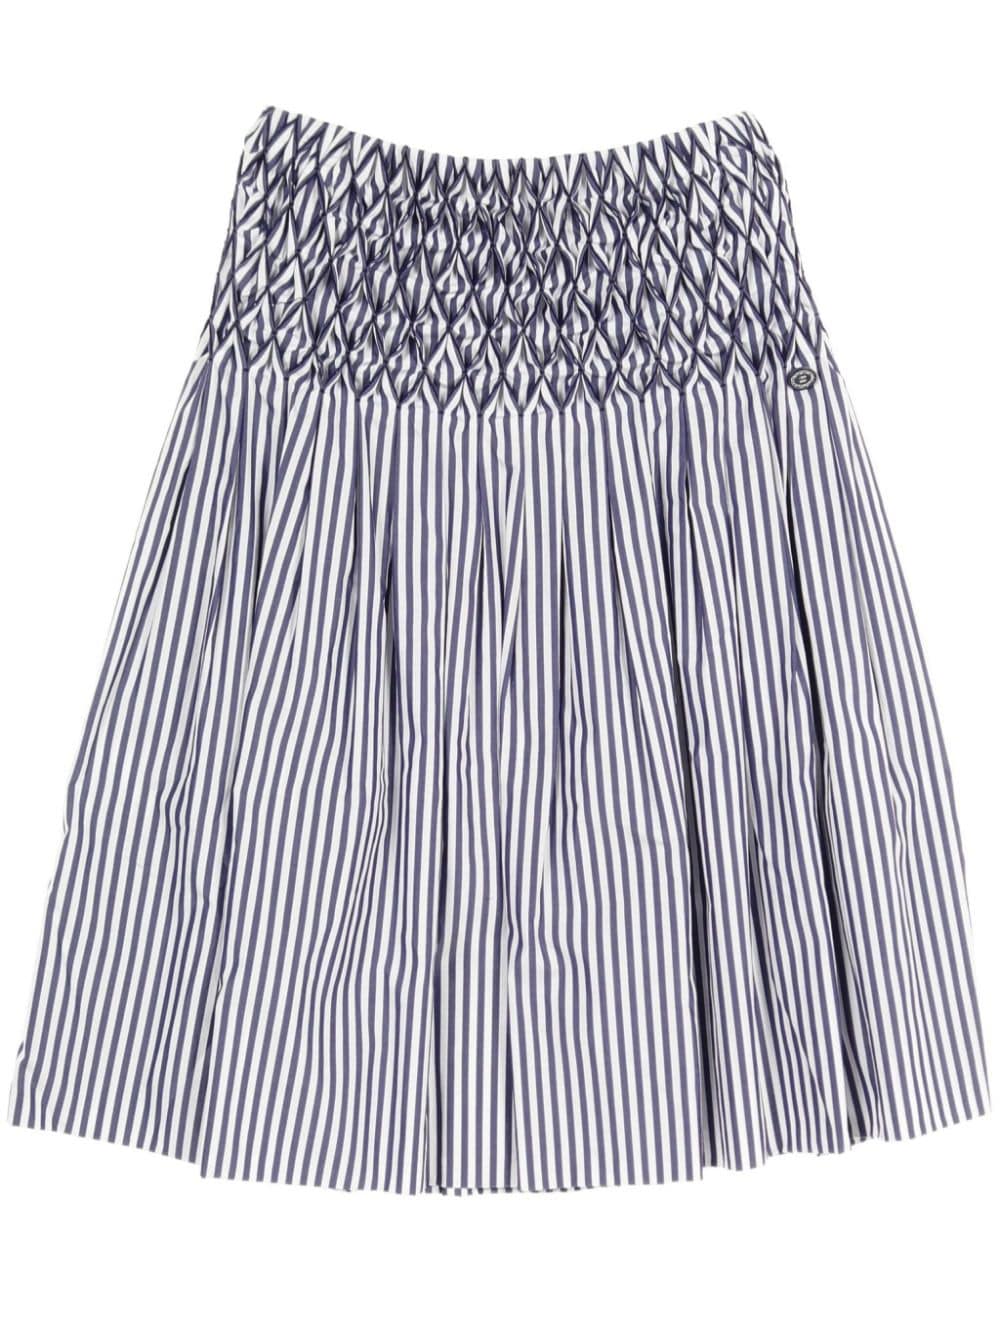 1986-1988 striped midi skirt